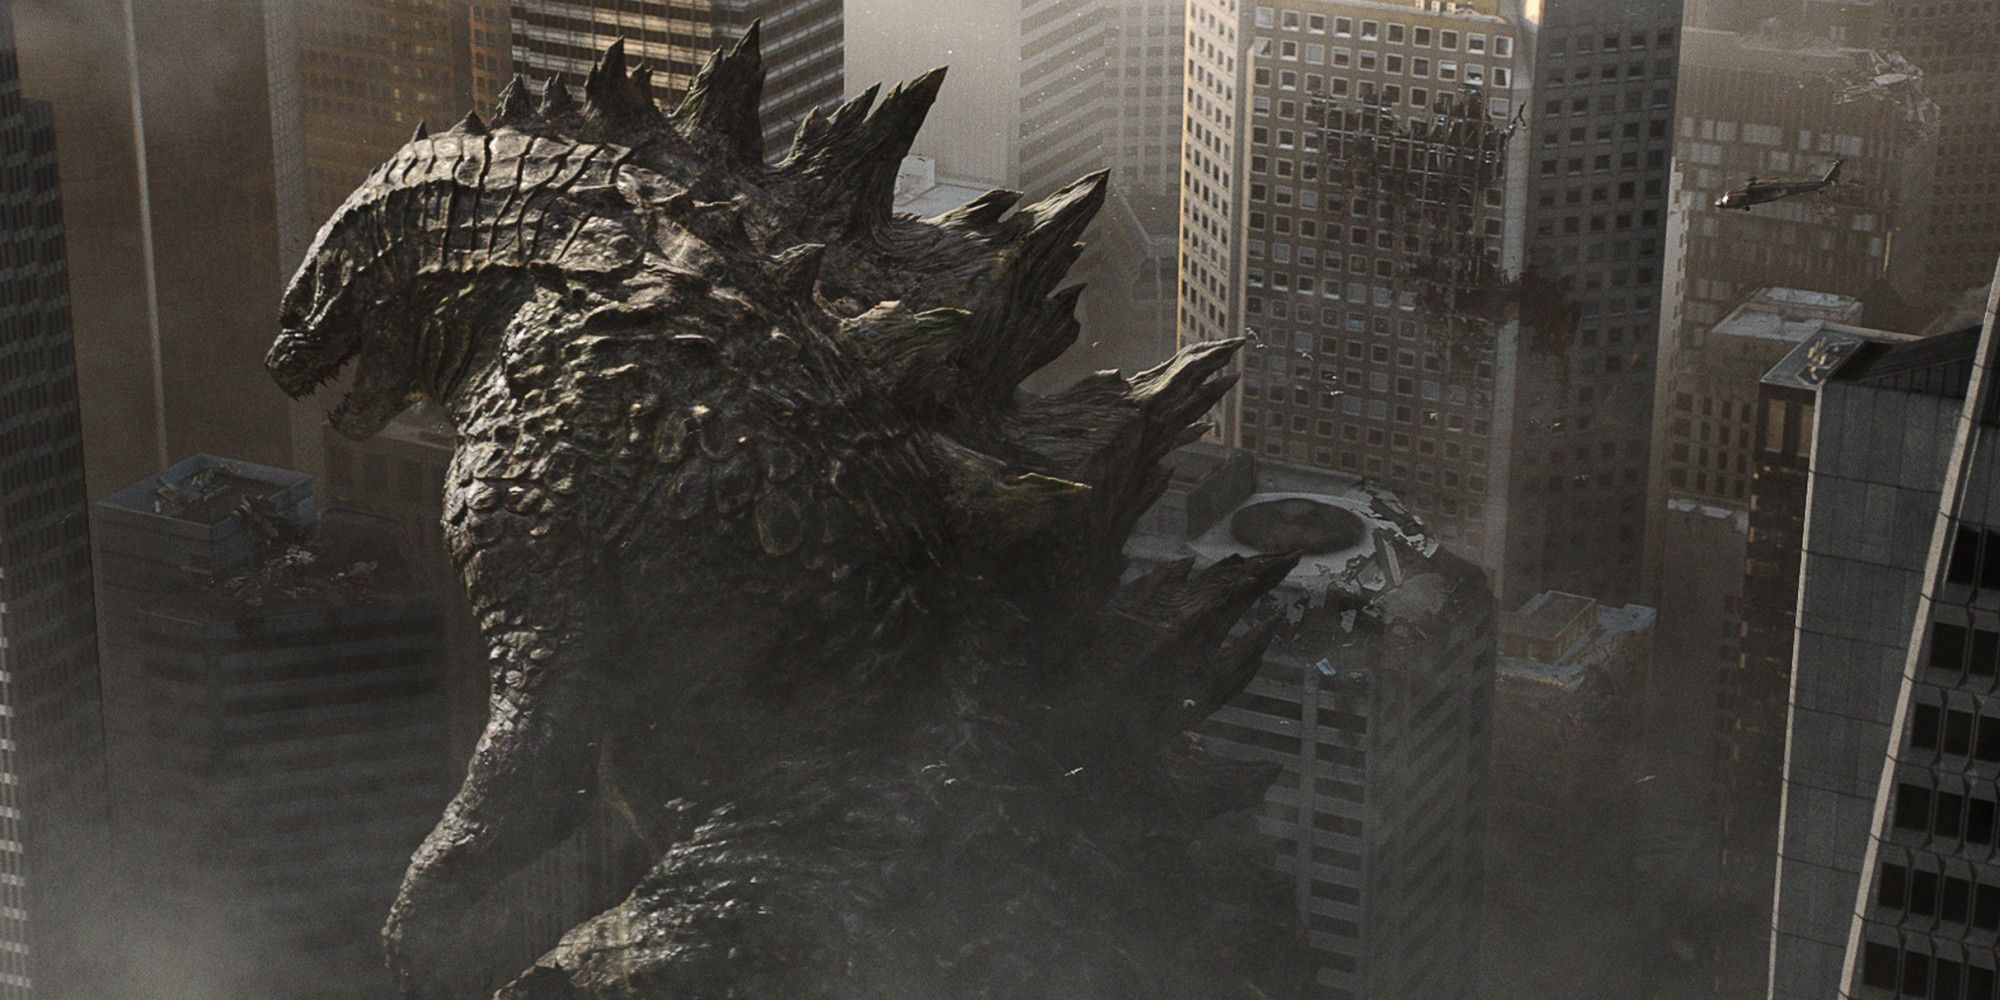 Godzilla prowling a city